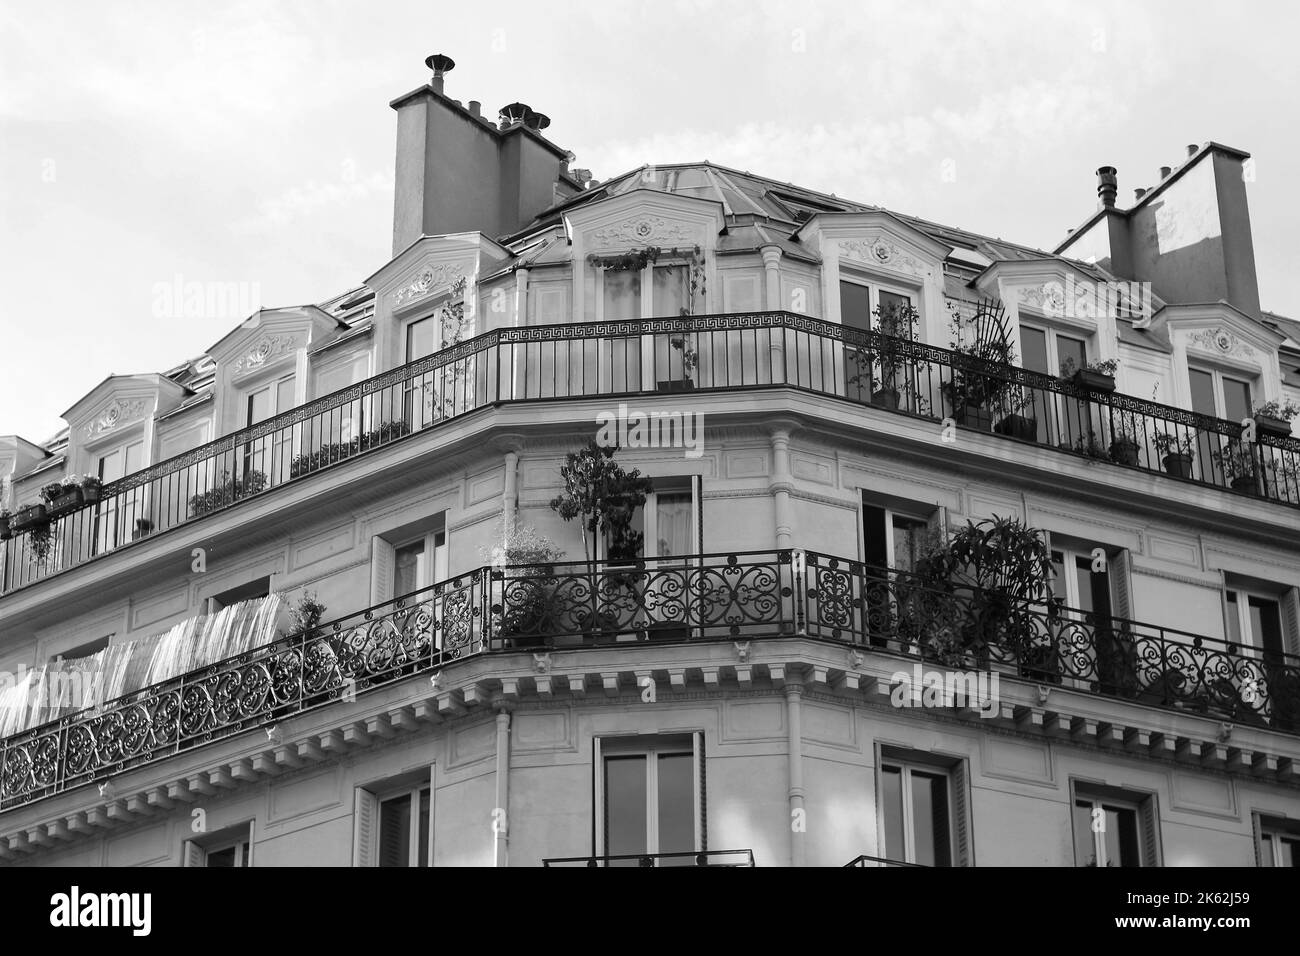 Architettura parigina classica. Facciata dell'edificio con tetto Mansard. Progettazione di architettura. Foto Stock